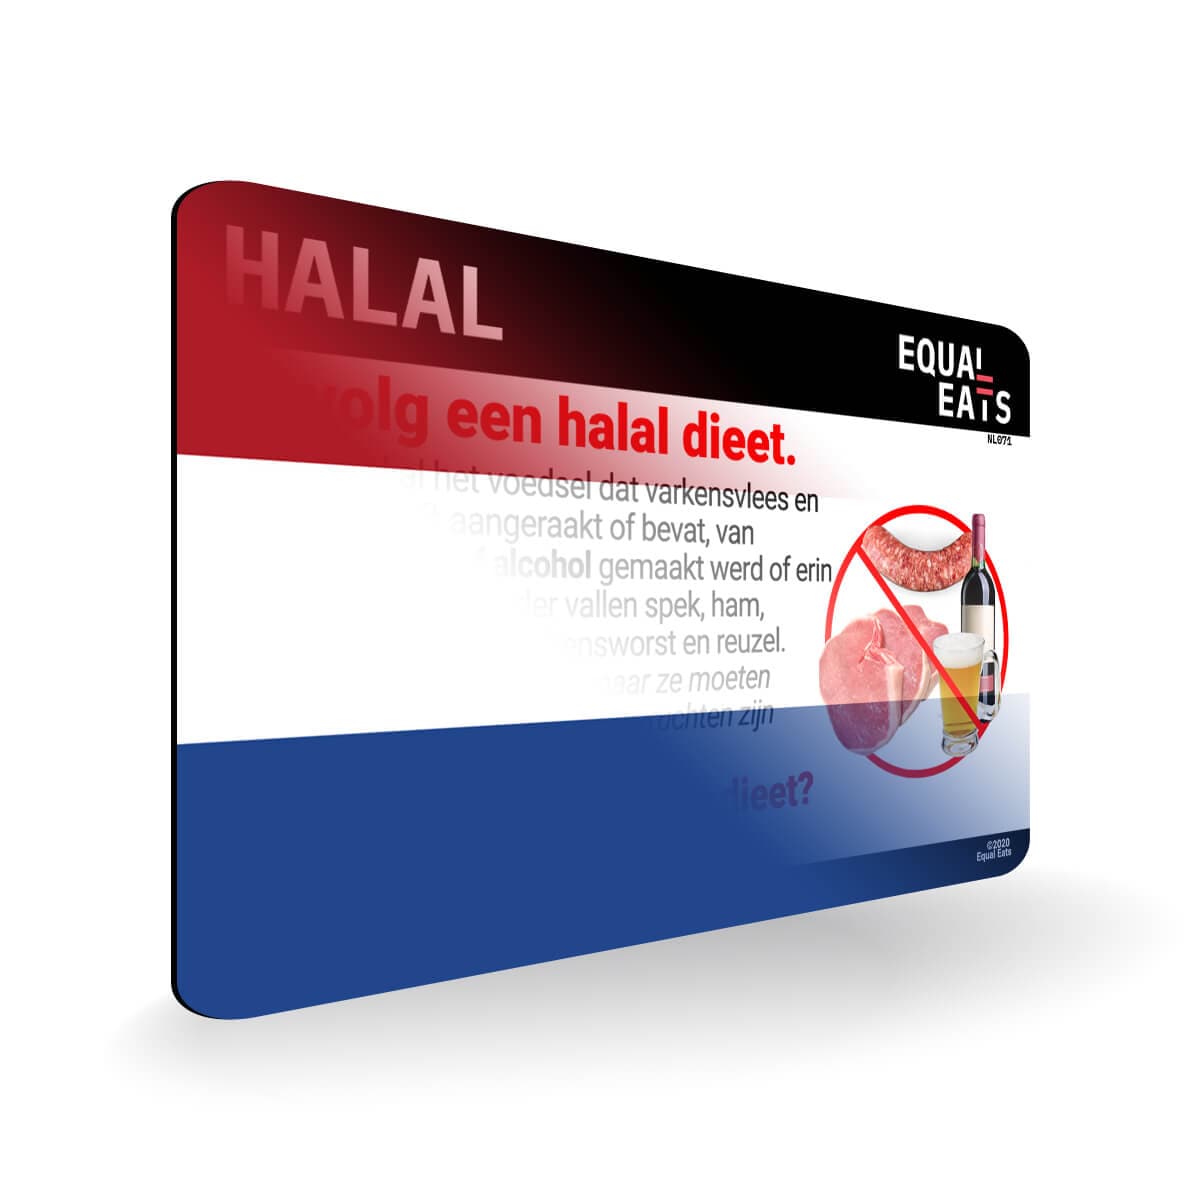 Halal Diet in Dutch. Halal Food Card for Netherlands